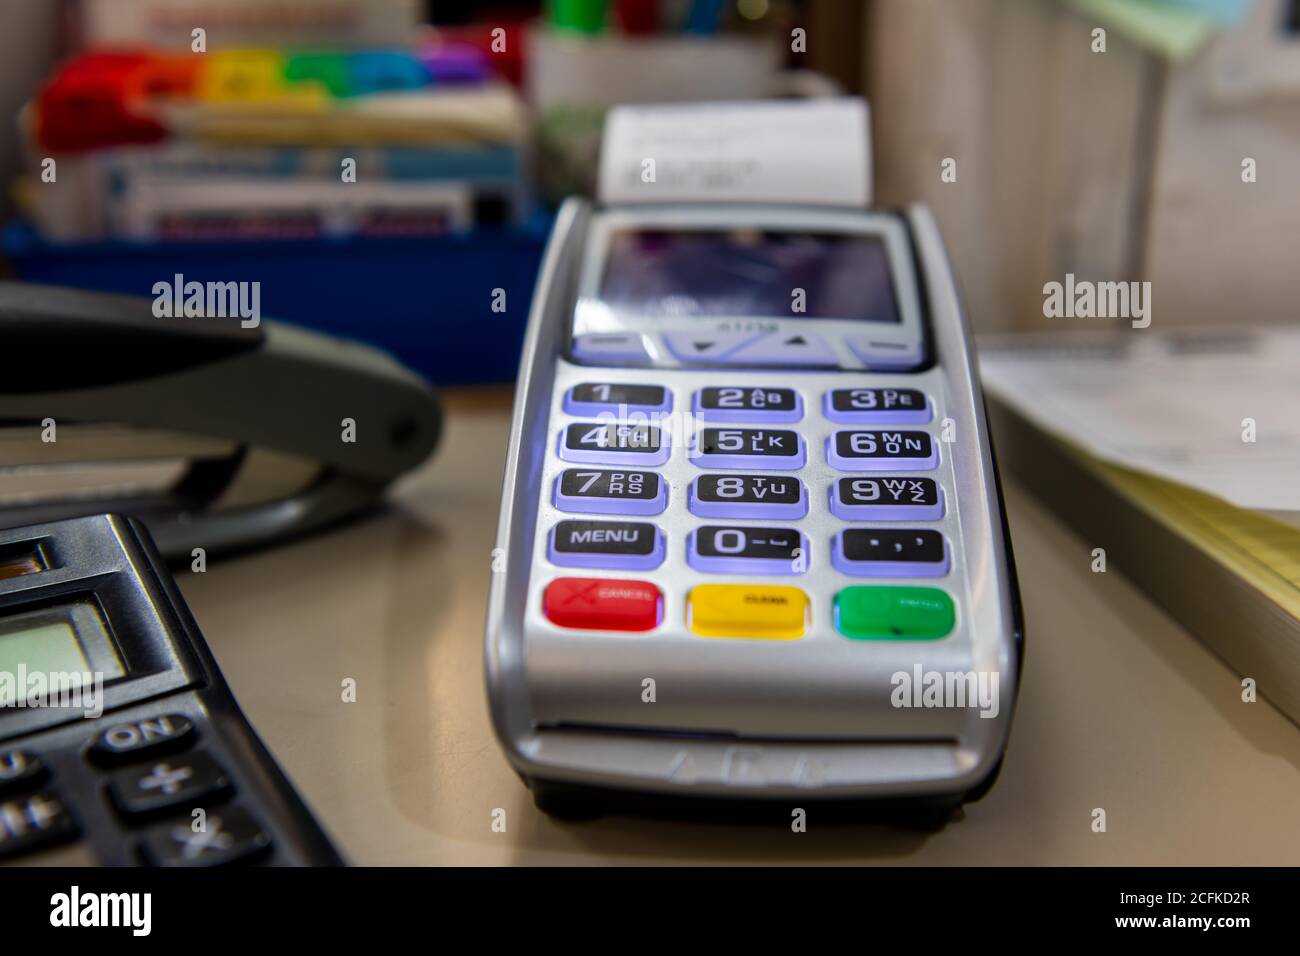 Hombre realizando el pago a través de smartwatch mediante tecnología sin  contacto NFC Fotografía de stock - Alamy